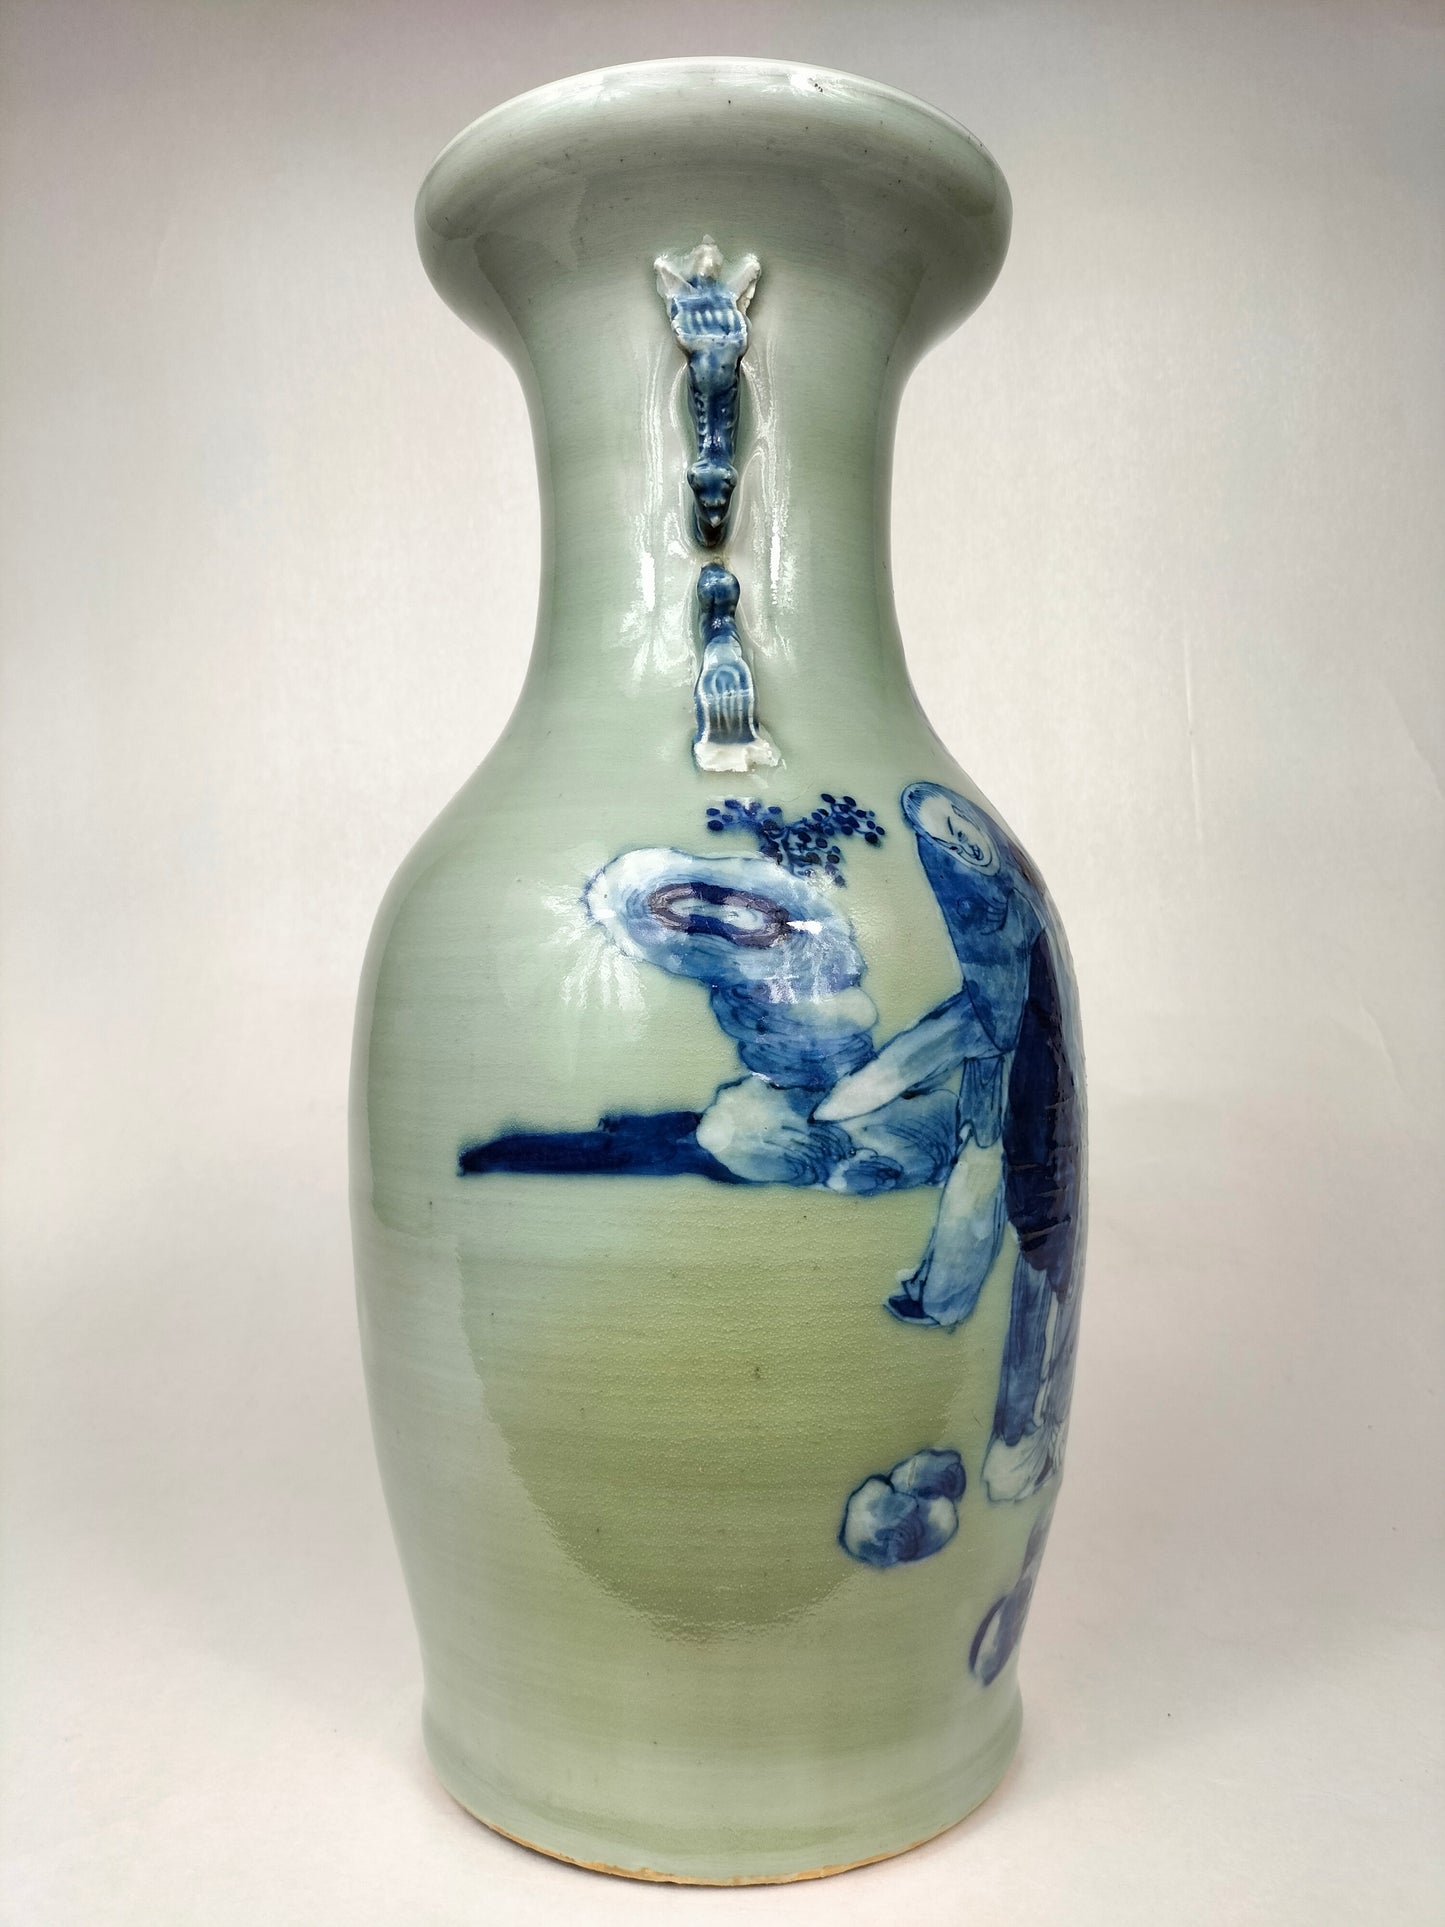 Vase caladon chinois antique à décor de sages // Dynastie Qing - 19ème siècle